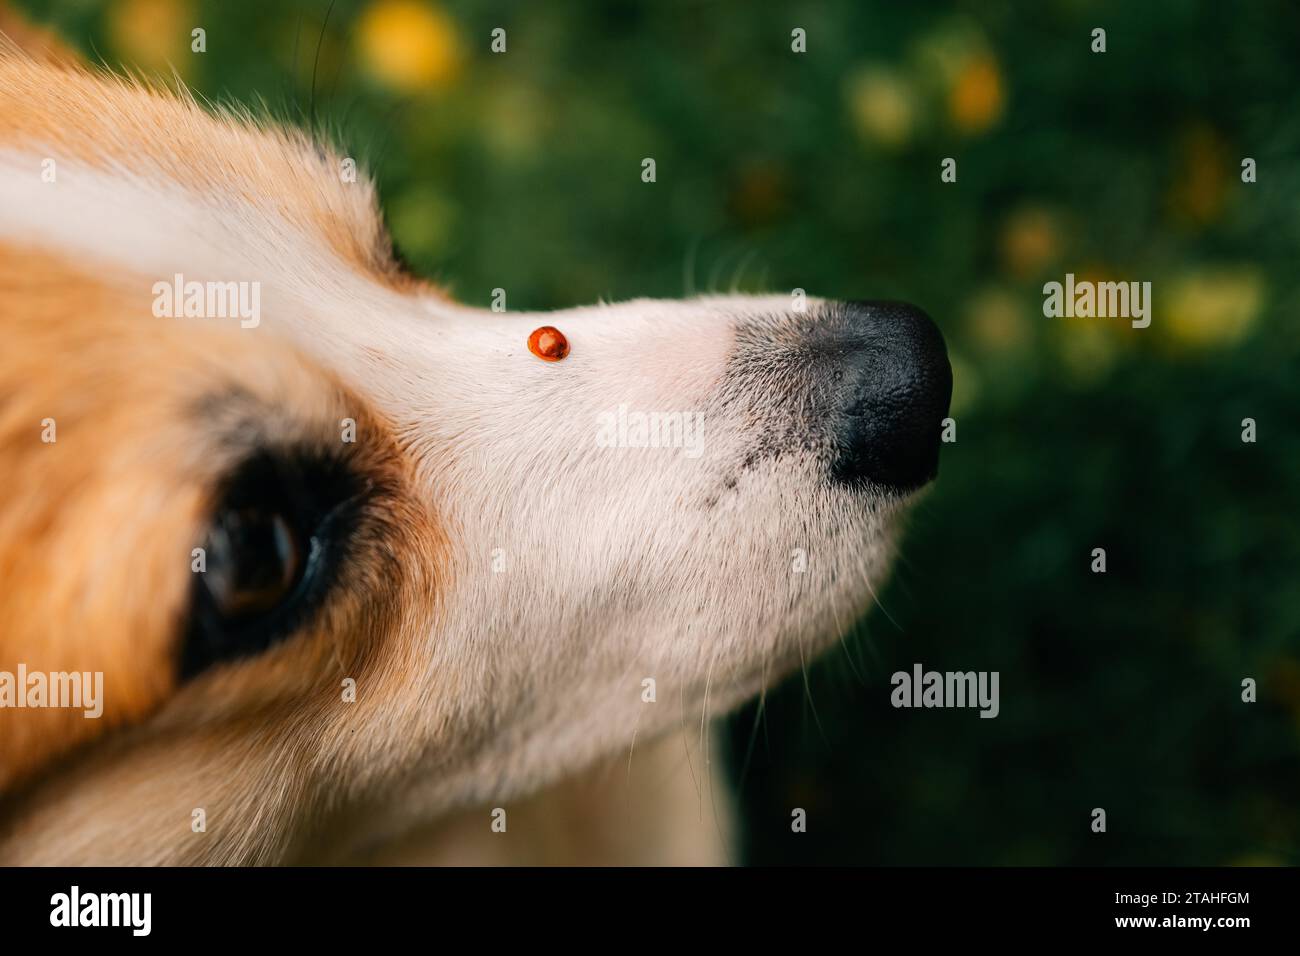 Ladybug on a corgi dog's nose Stock Photo